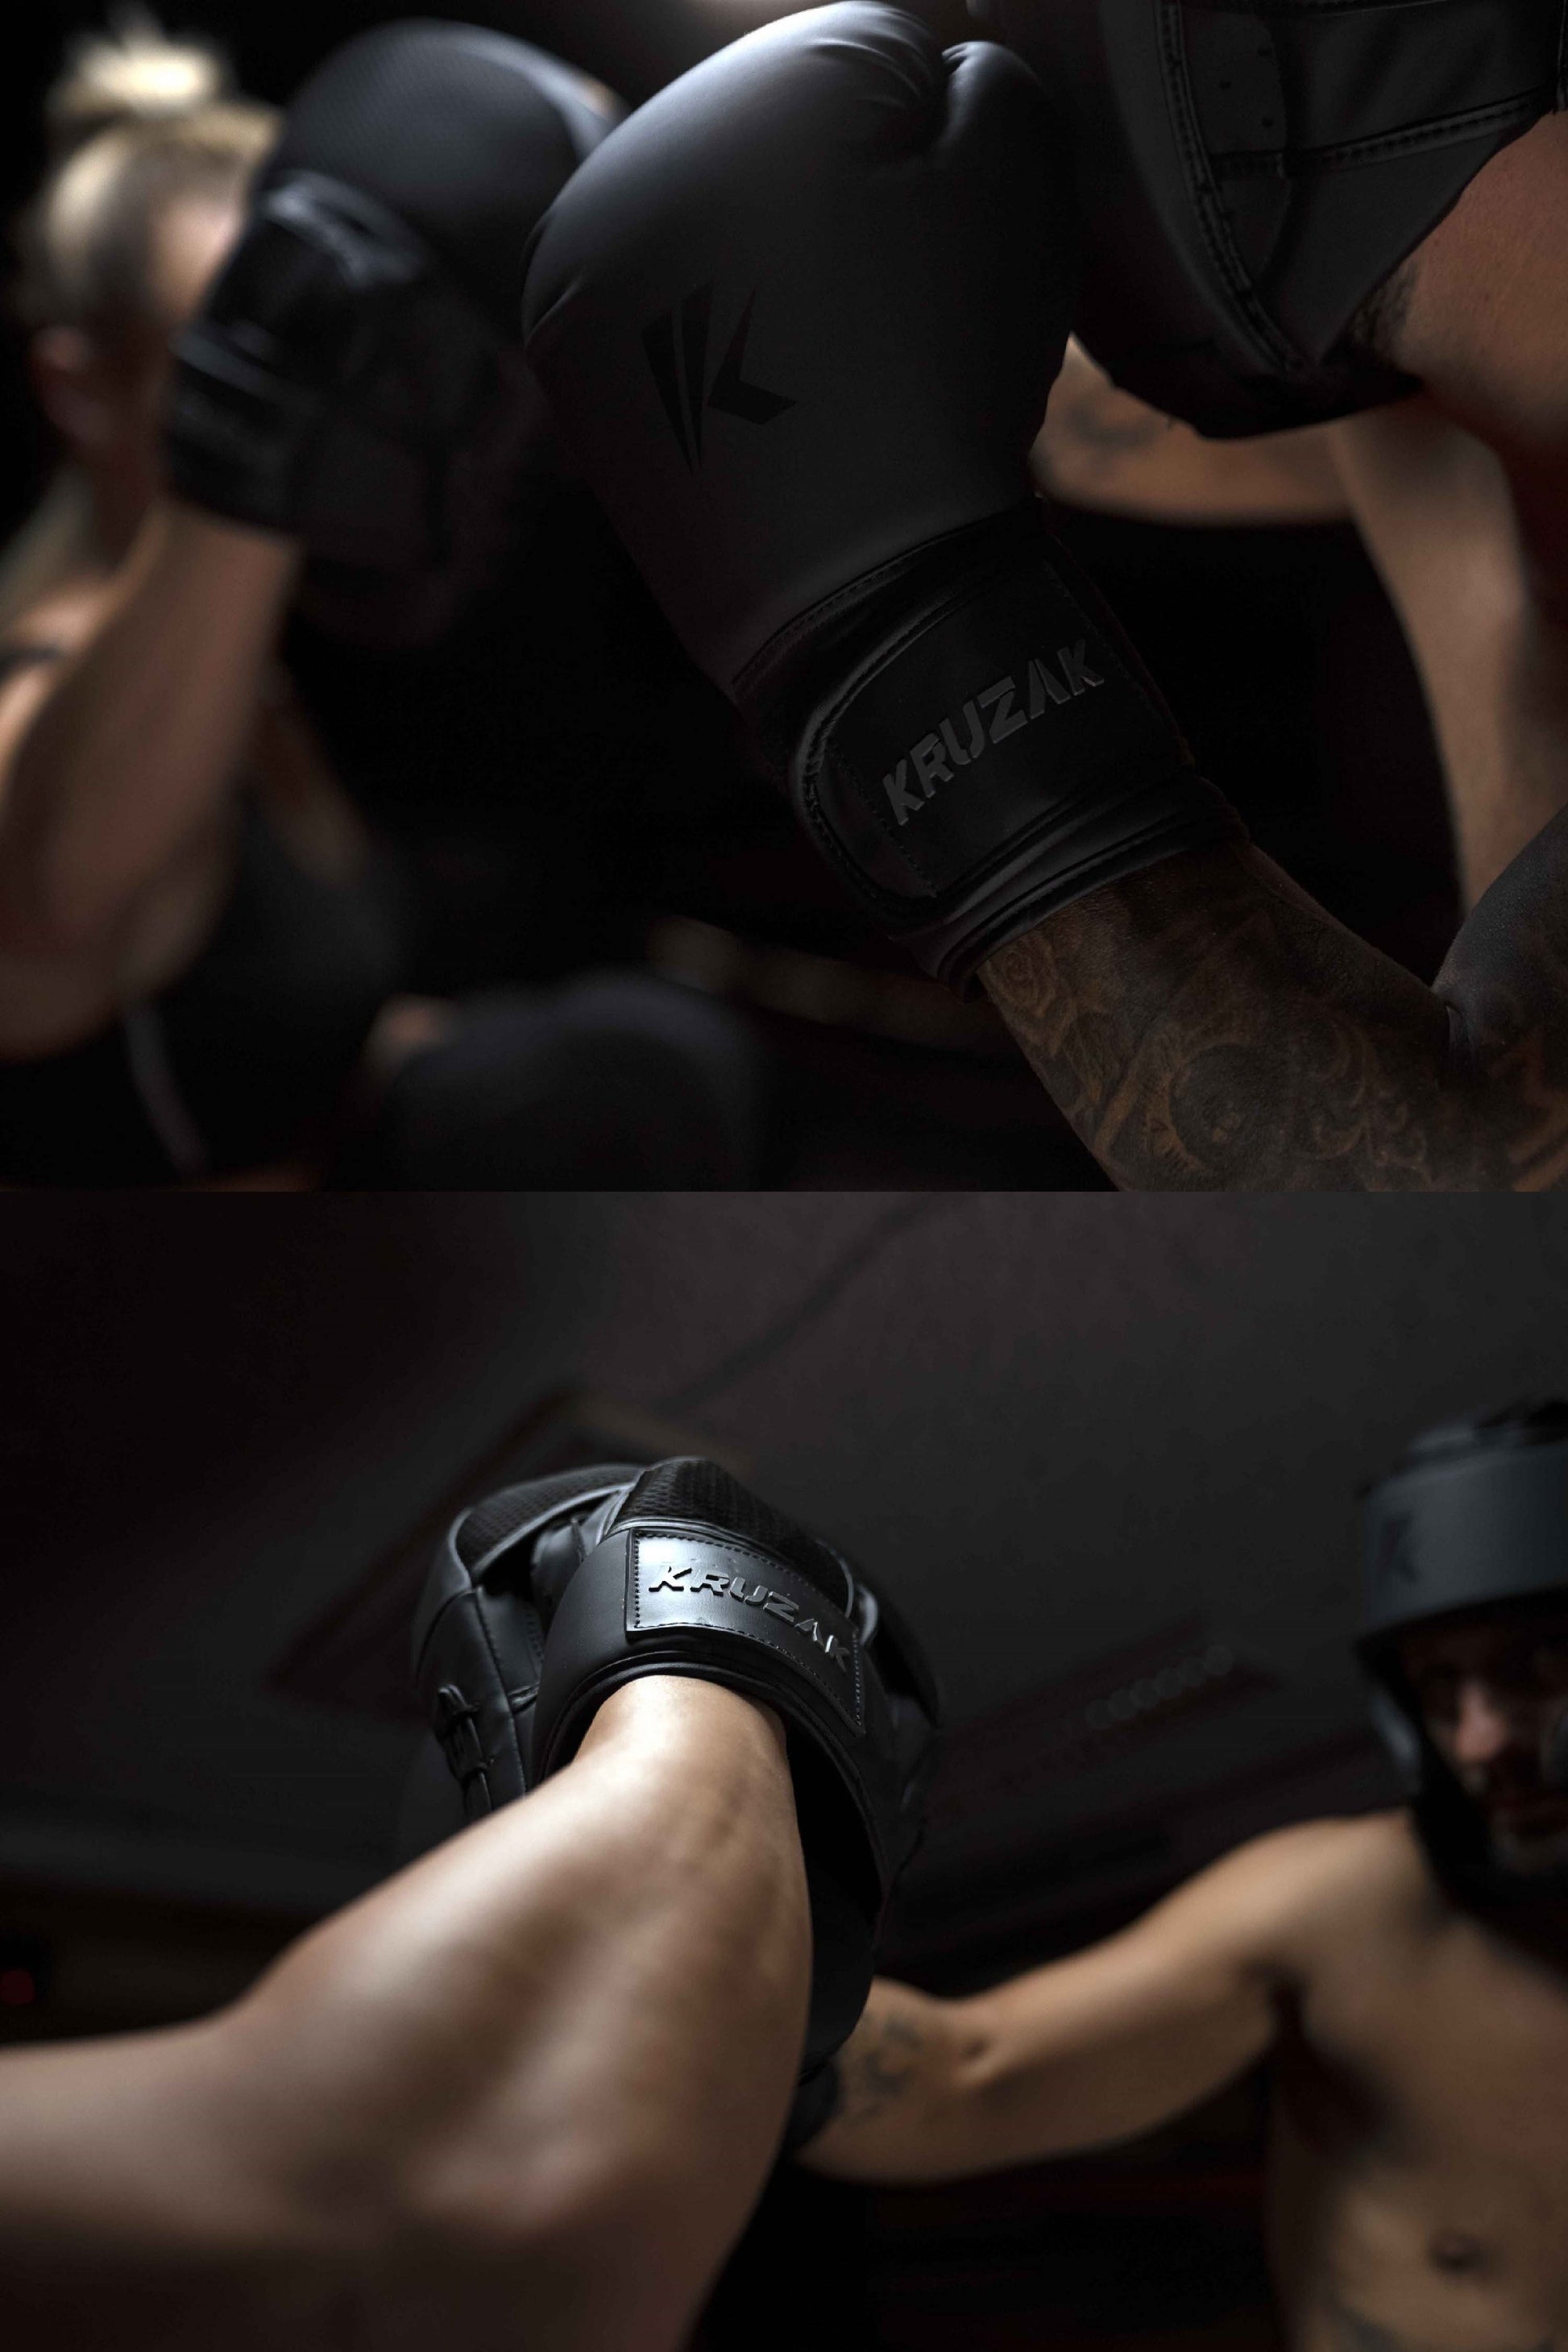 Man wearing Kruzak Matte Black Boxing Gloves and Focus Pads